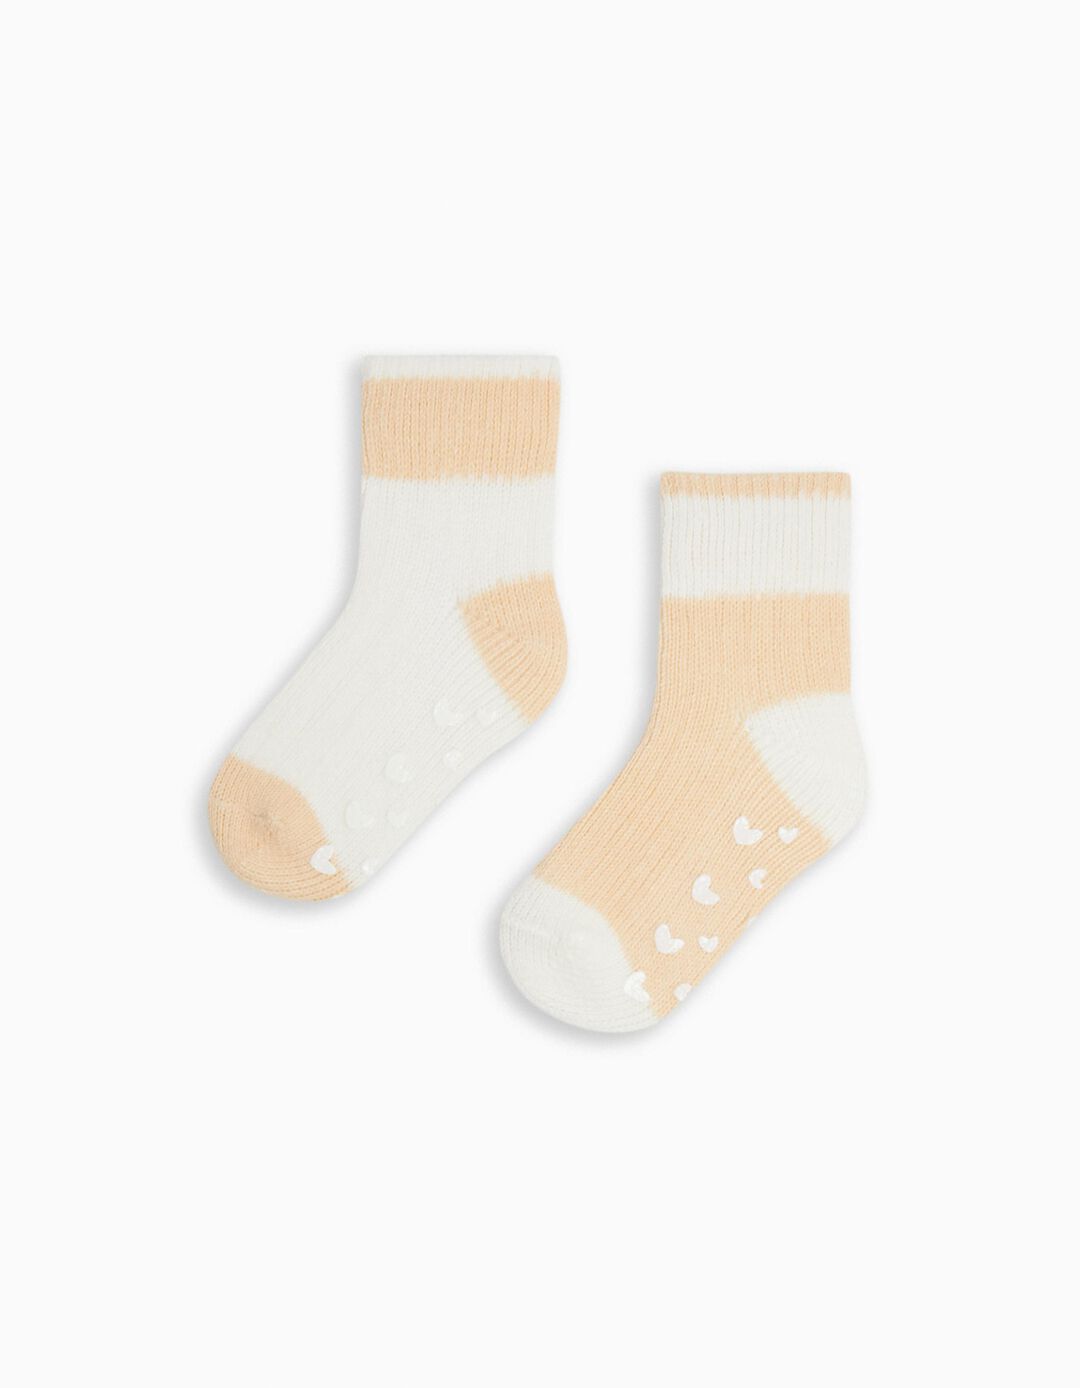 Pack 2 Pairs of Non-Slip Mesh Socks, Girls, Multicolor